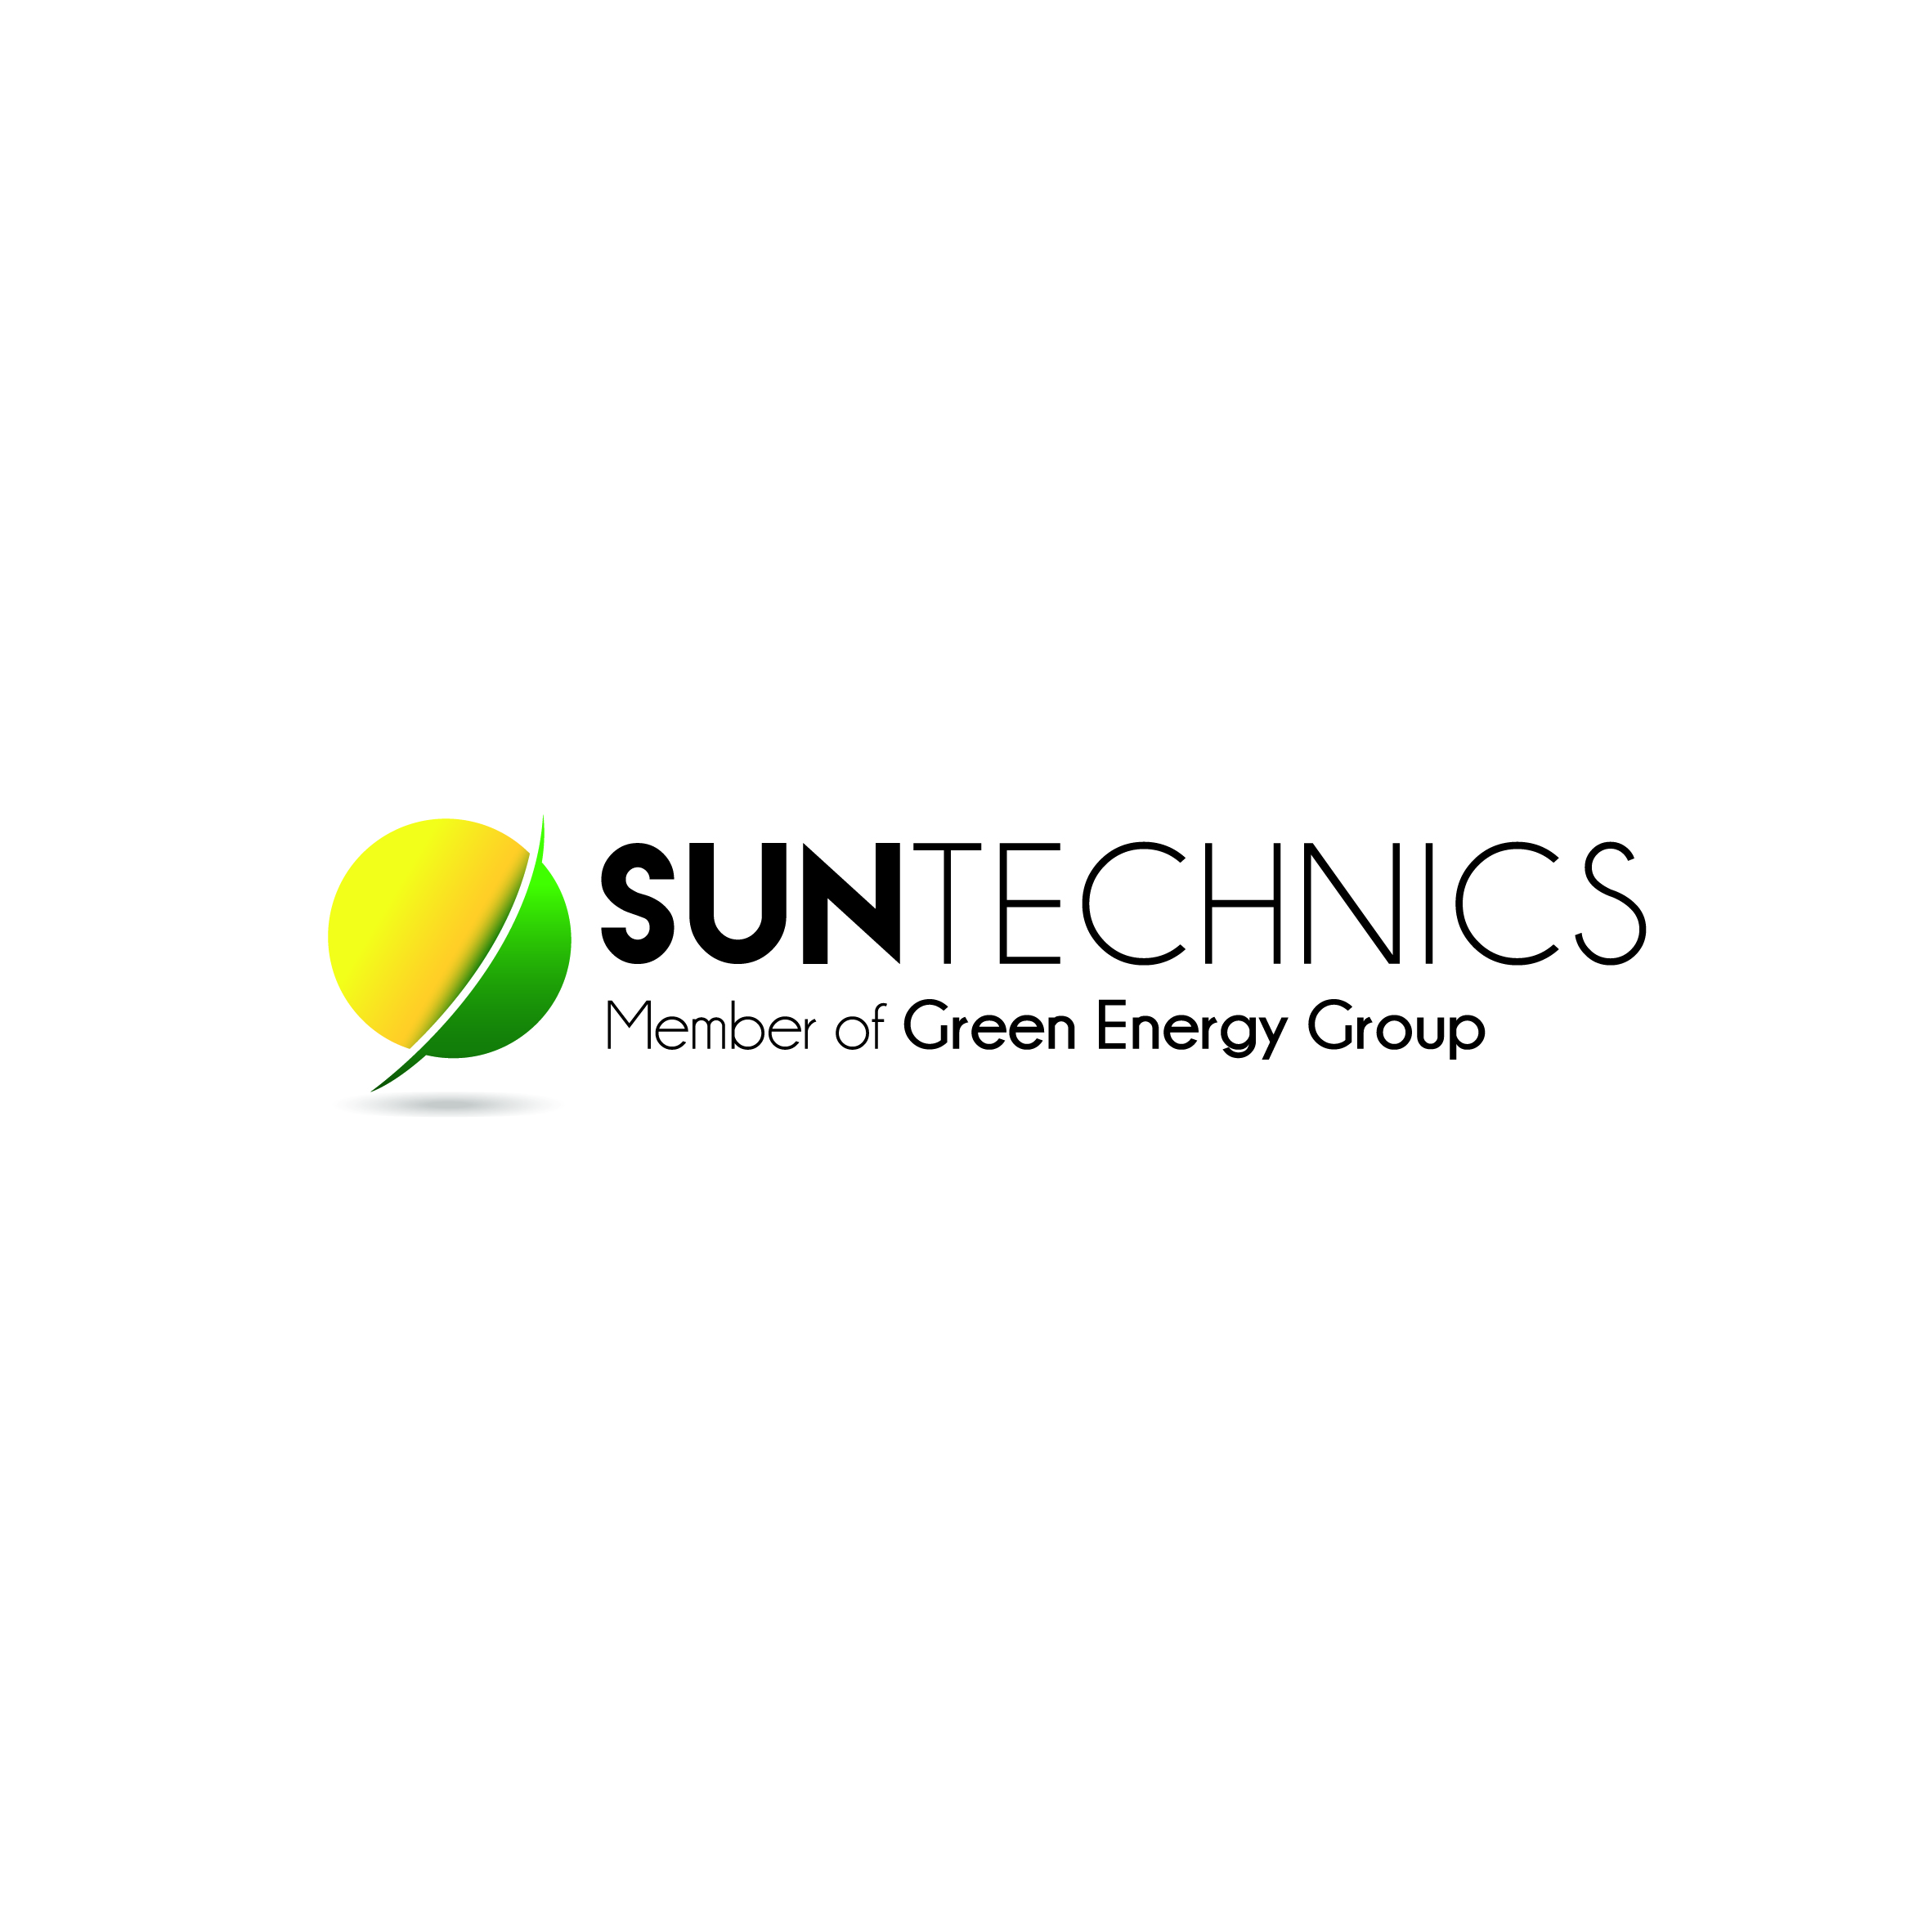 Suntechnics ltd